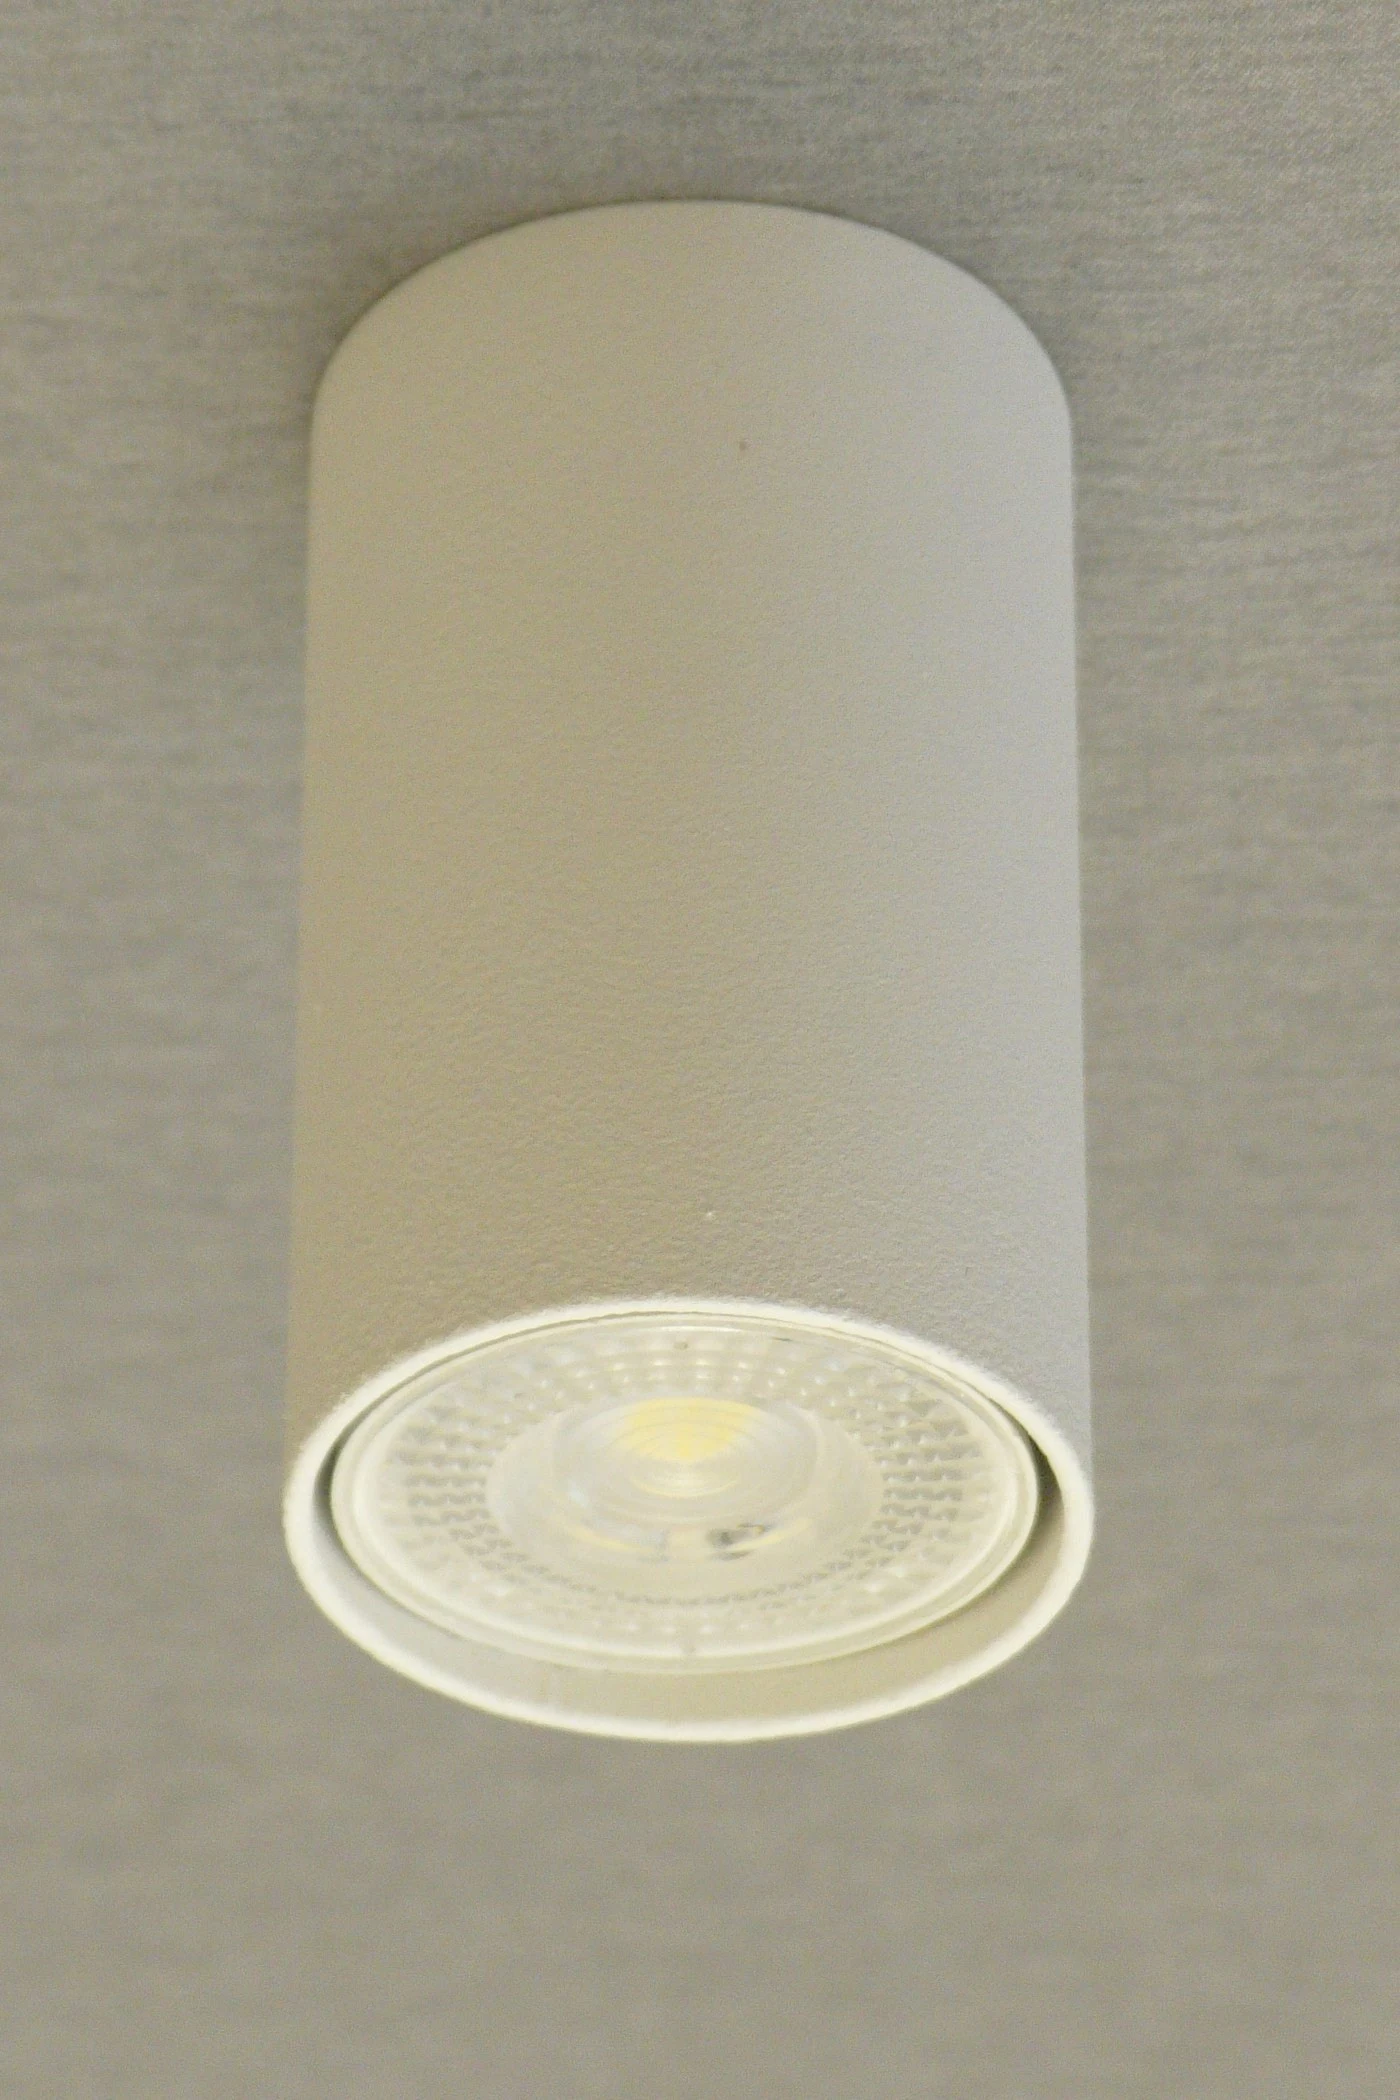   
                        Точечный светильник NB LIGHT  (Украина) 16800    
                         в стиле модерн.  
                        Тип источника света: светодиодные led, галогенные.                         Форма: цилиндр.                                                                          фото 5